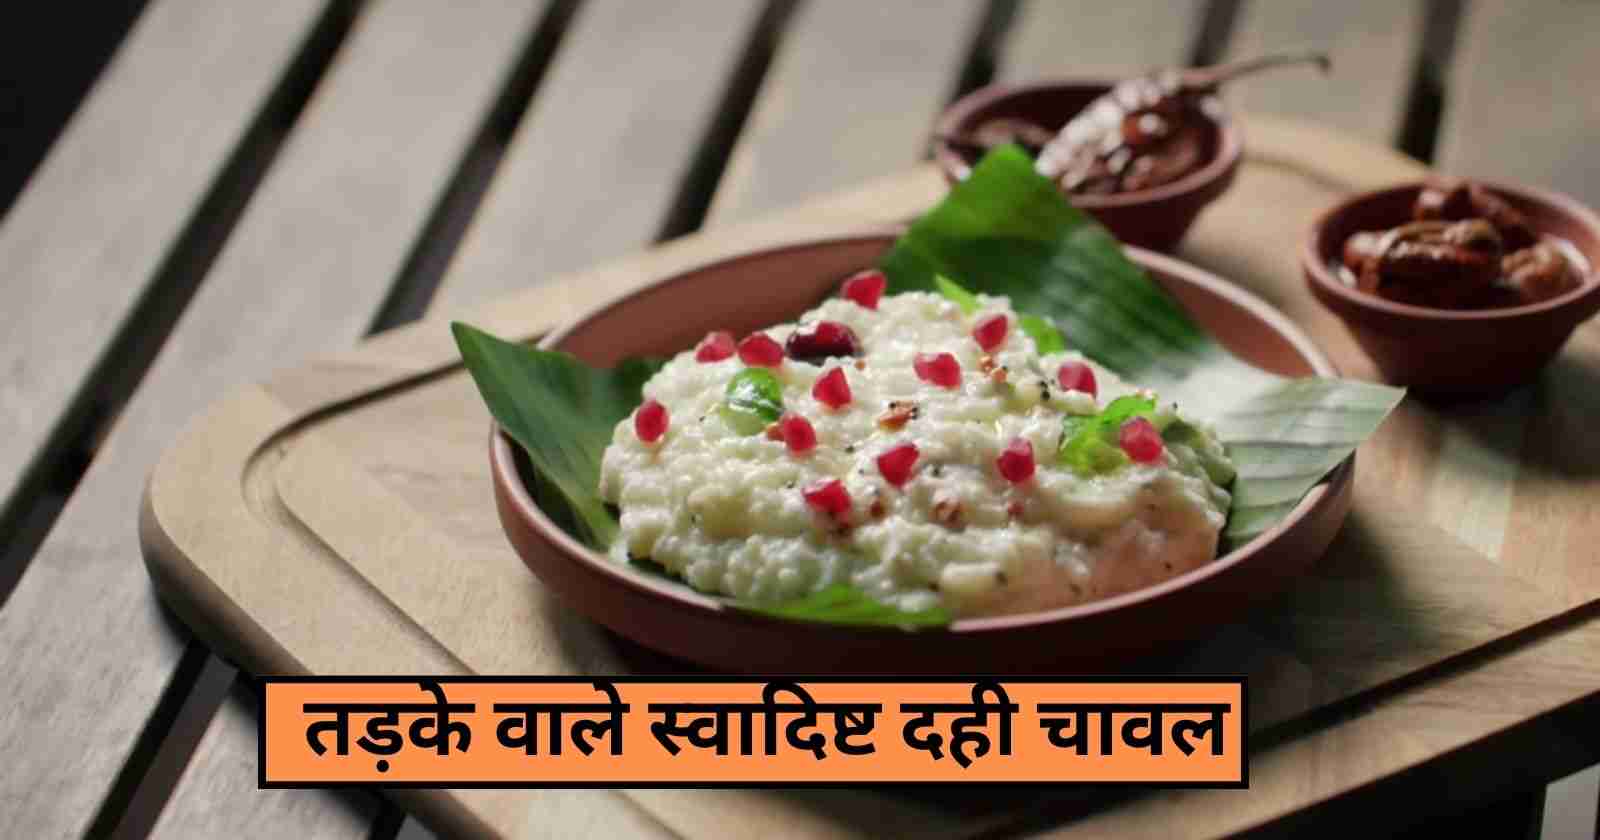 Curd Rice Recipe In Hindi: लंच में बनाये स्वादिष्ट तड़के वाला दही चावल hinditonews.in